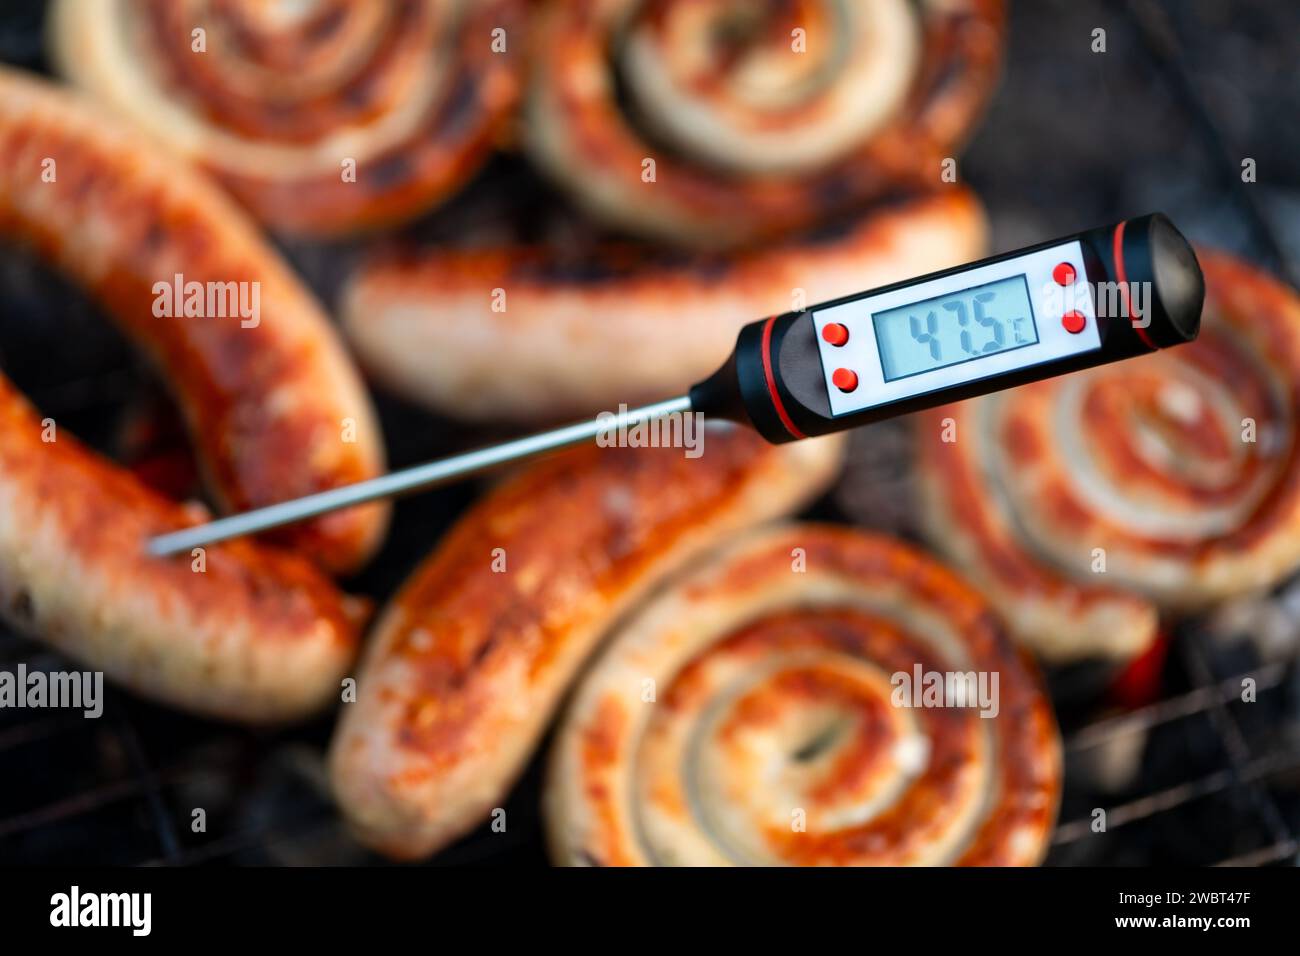 Primo piano di un termometro digitale per la carne che visualizza la temperatura al di sotto della soglia di cottura sicura per le salsicce grigliate, segnalando una potenziale guarigione Foto Stock